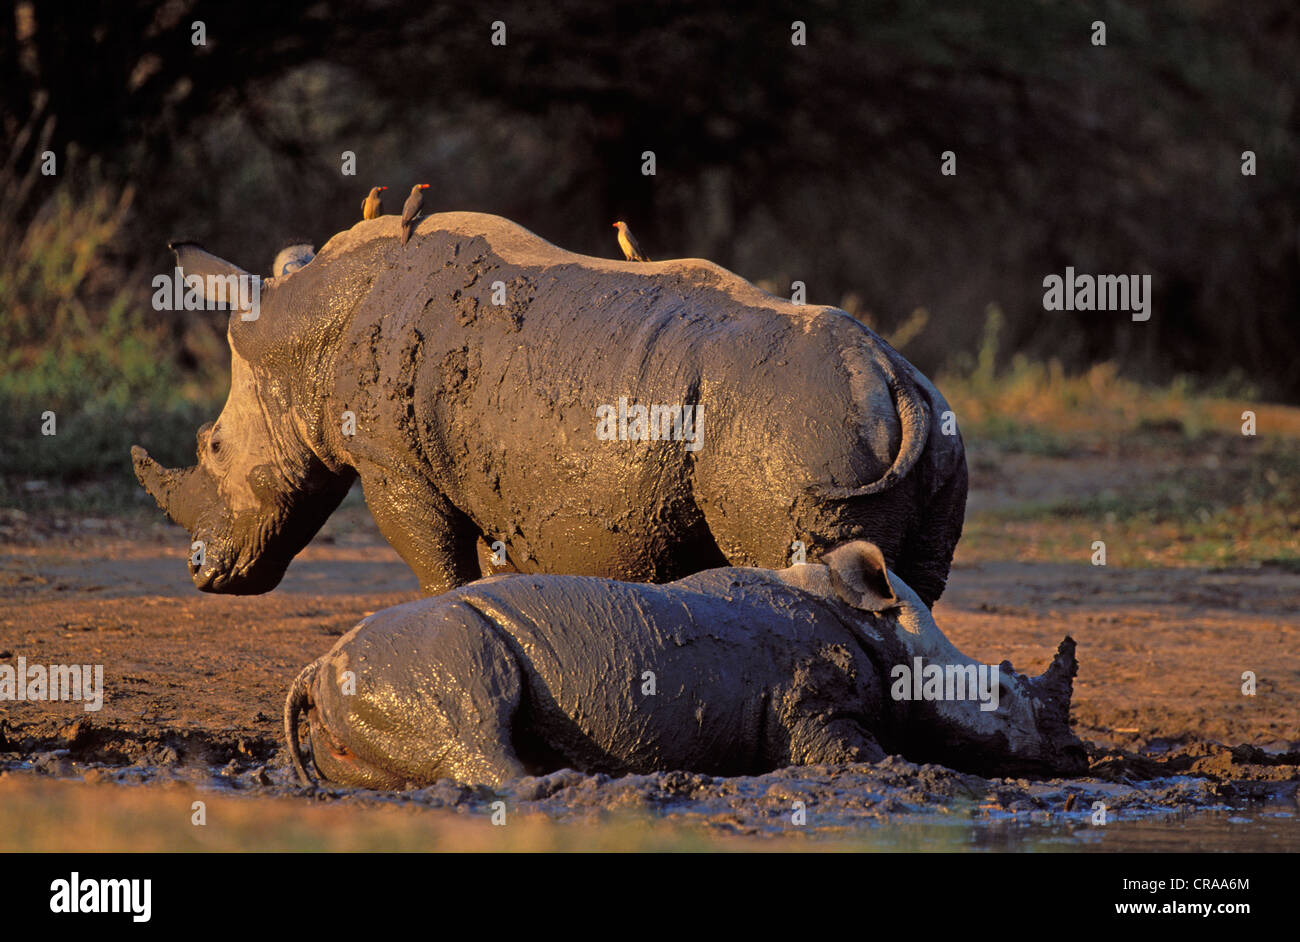 Le rhinocéros blanc (Ceratotherium simum), à Mud wallow, espèce en voie de disparition, Kruger National Park, Afrique du Sud, l'Afrique Banque D'Images